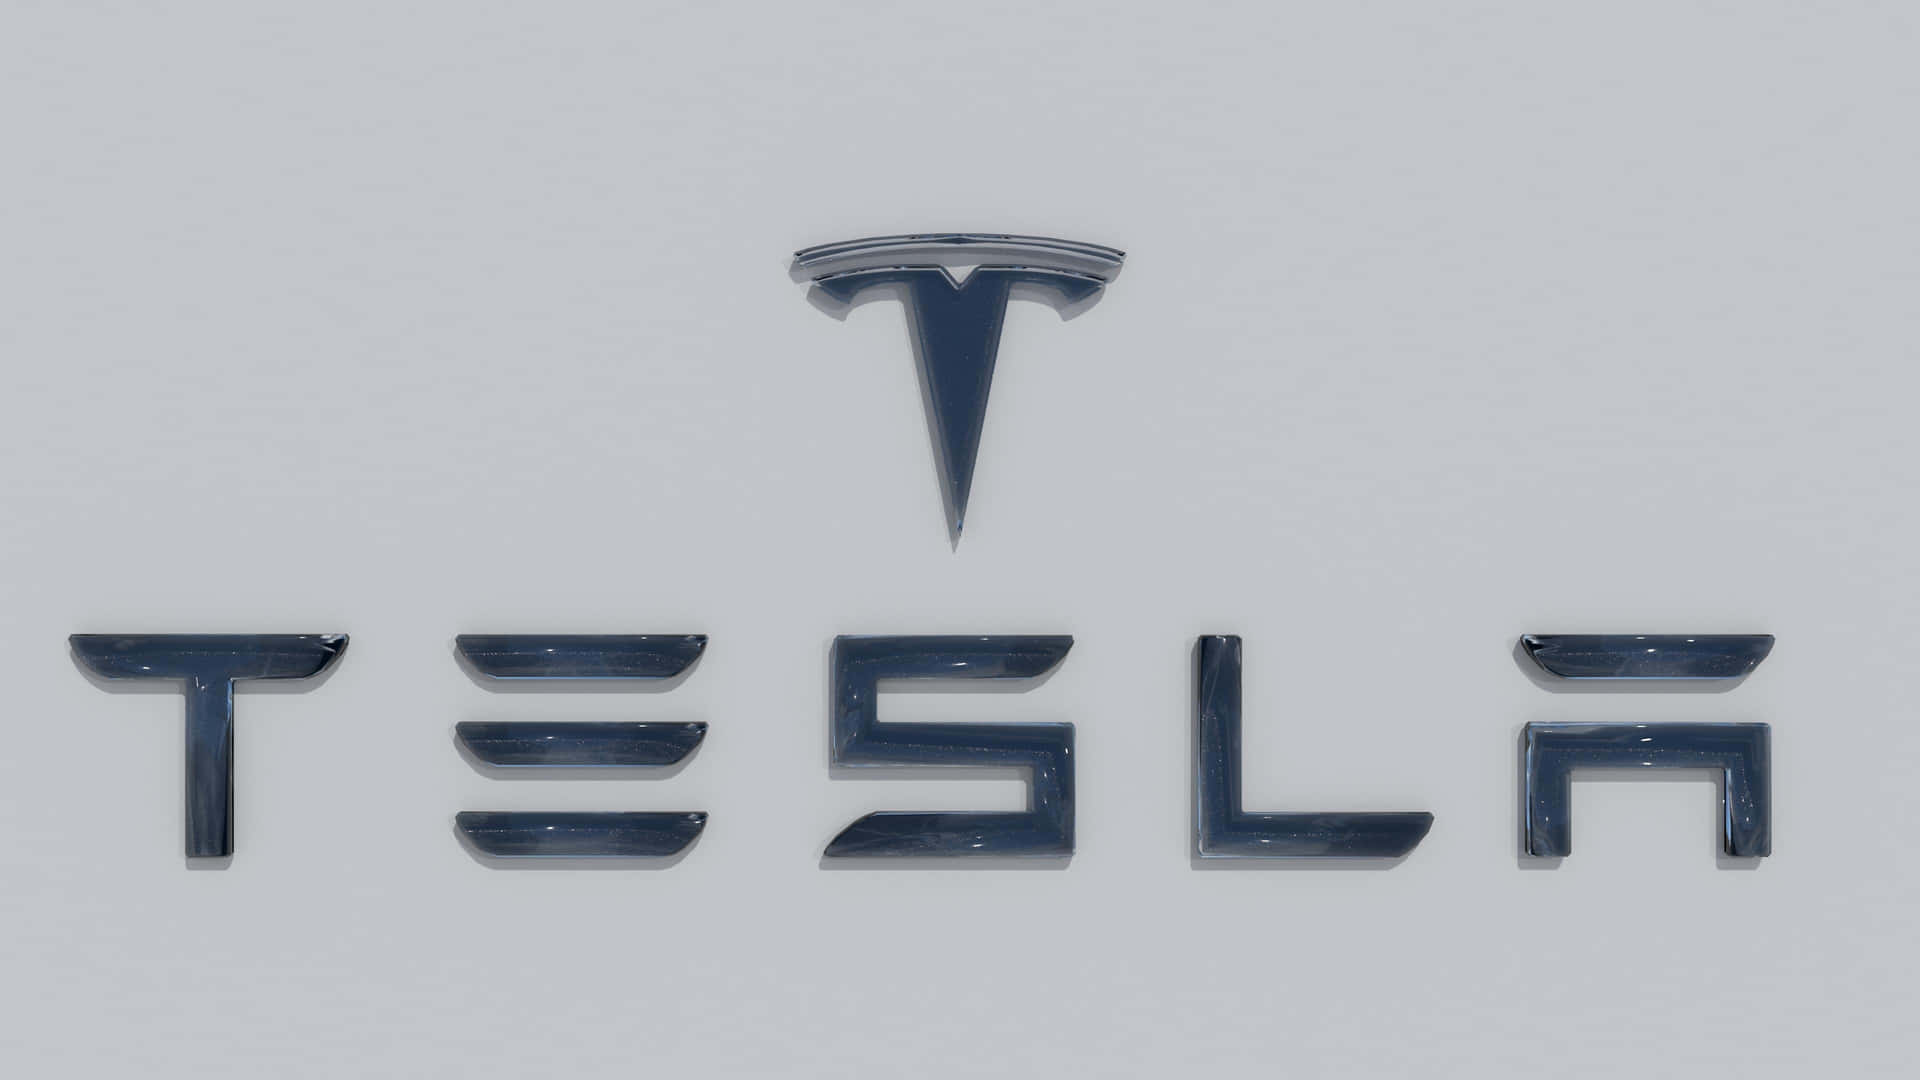 Denikoniska Teslalogen I 4k. Wallpaper